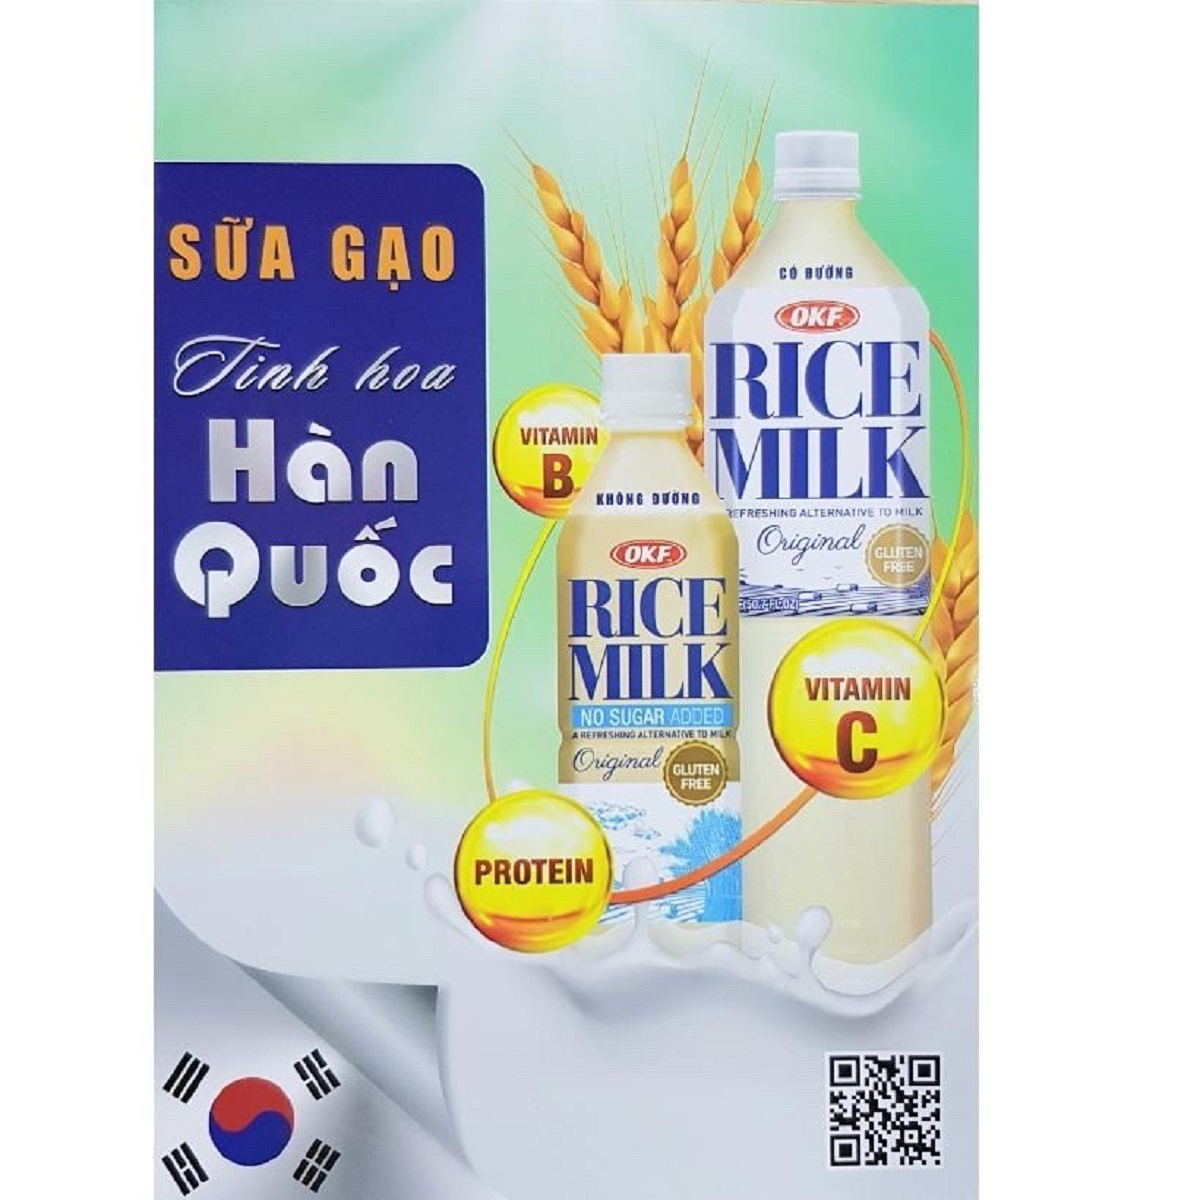 Sữa tiểu đường Hàn Quốc - Sữa gạo OKF